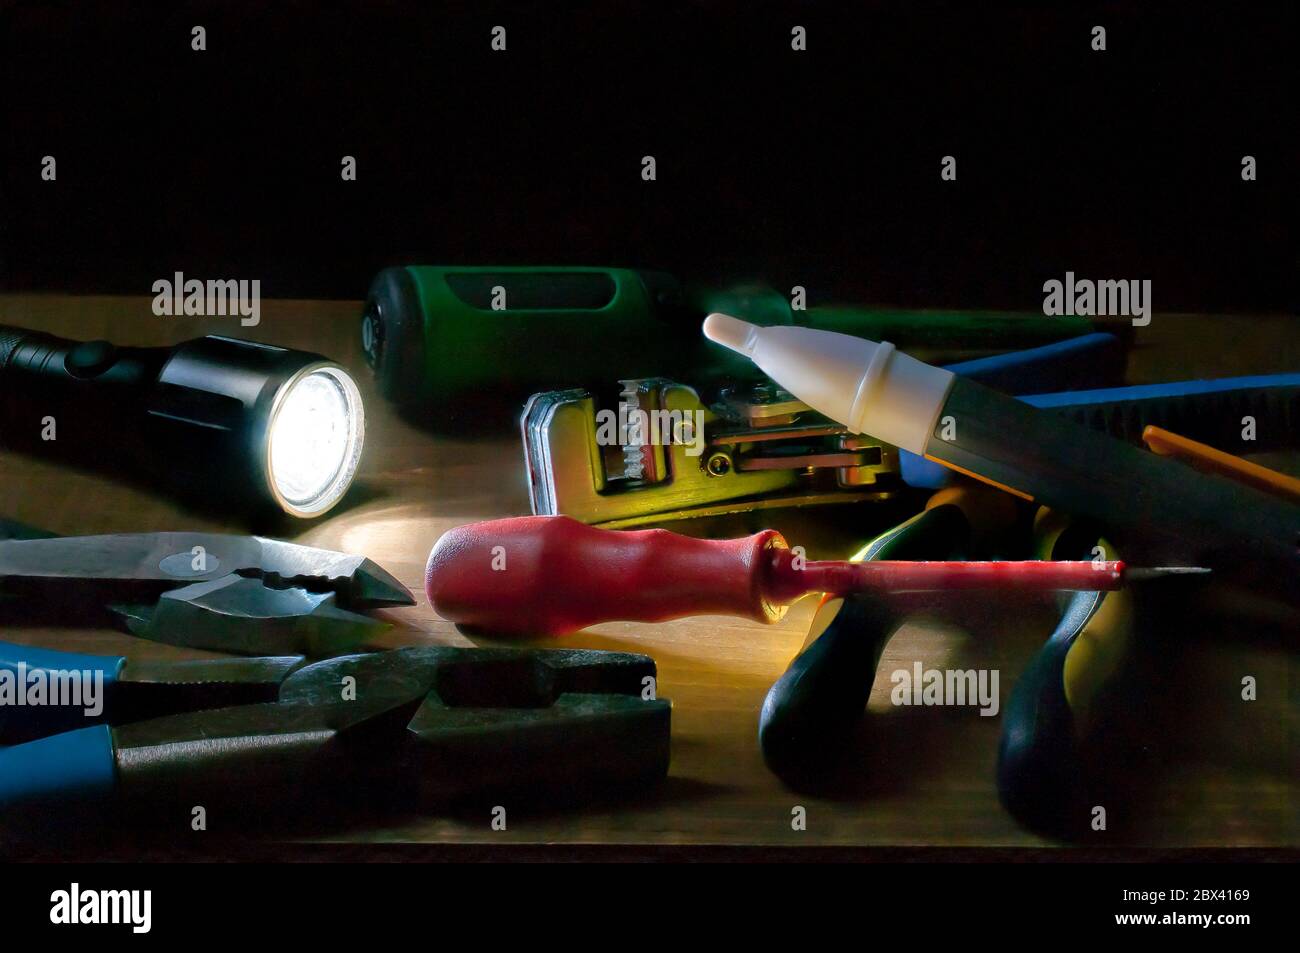 Elektriker Werkzeuge an einem dunklen Ort, beleuchtet von einer Taschenlampe, Schraubendreher Zange Drahtstreifen, Spannungsprüfer auf einem Tisch. Stockfoto